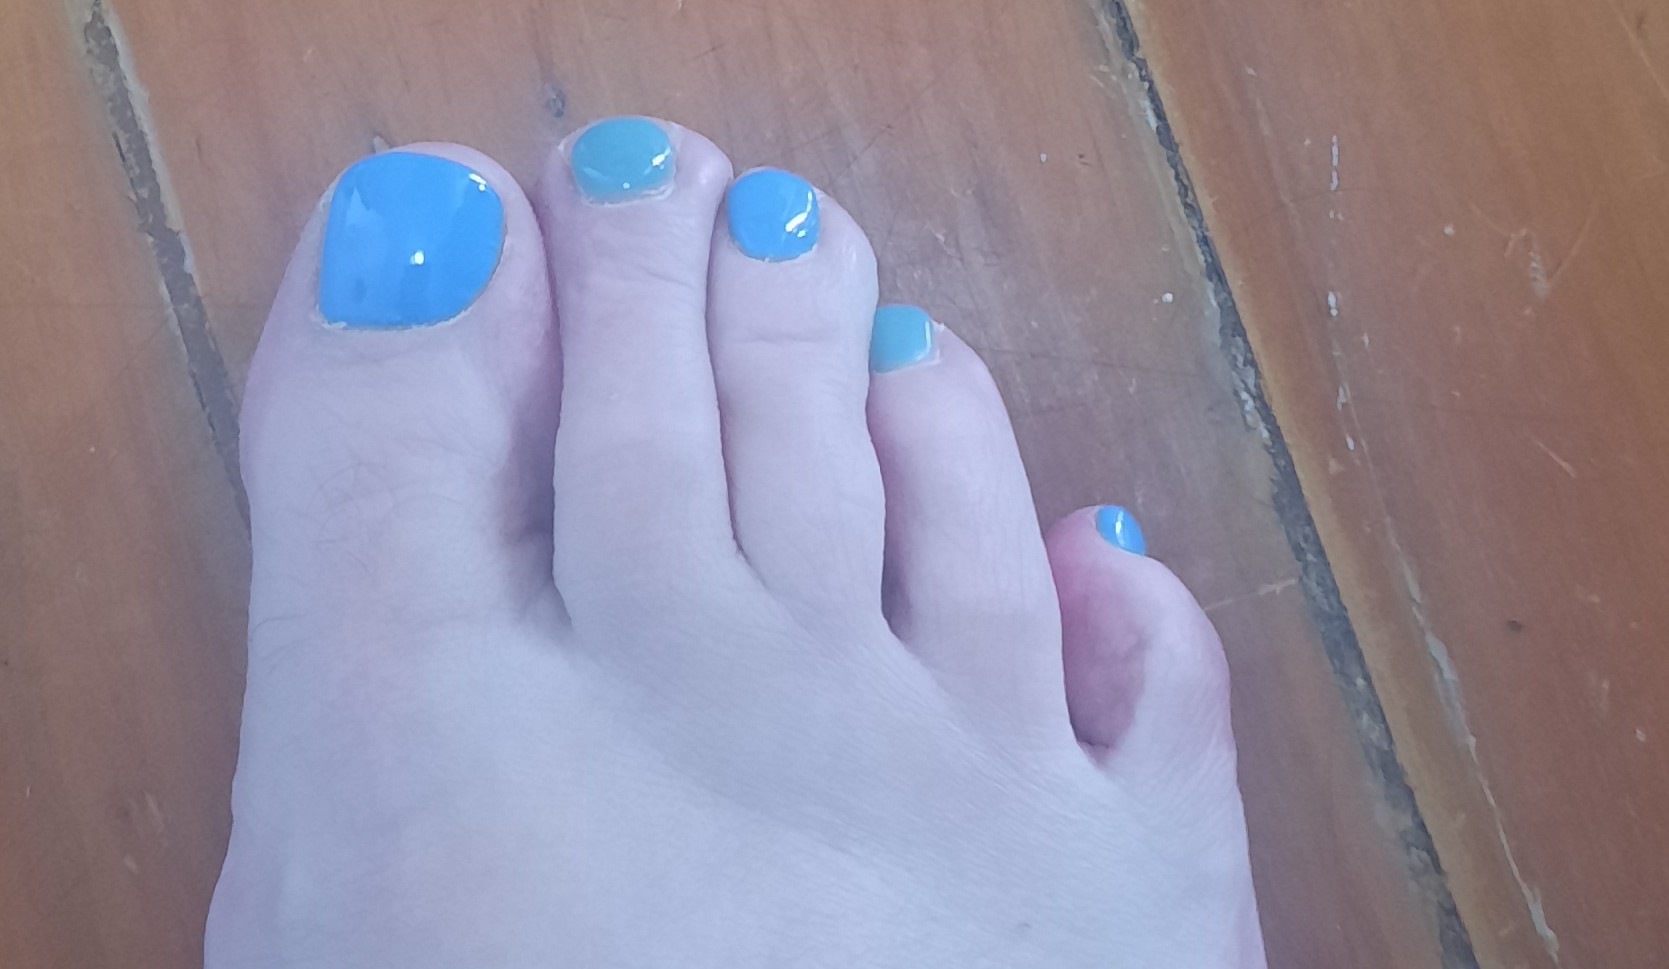 My toe nails